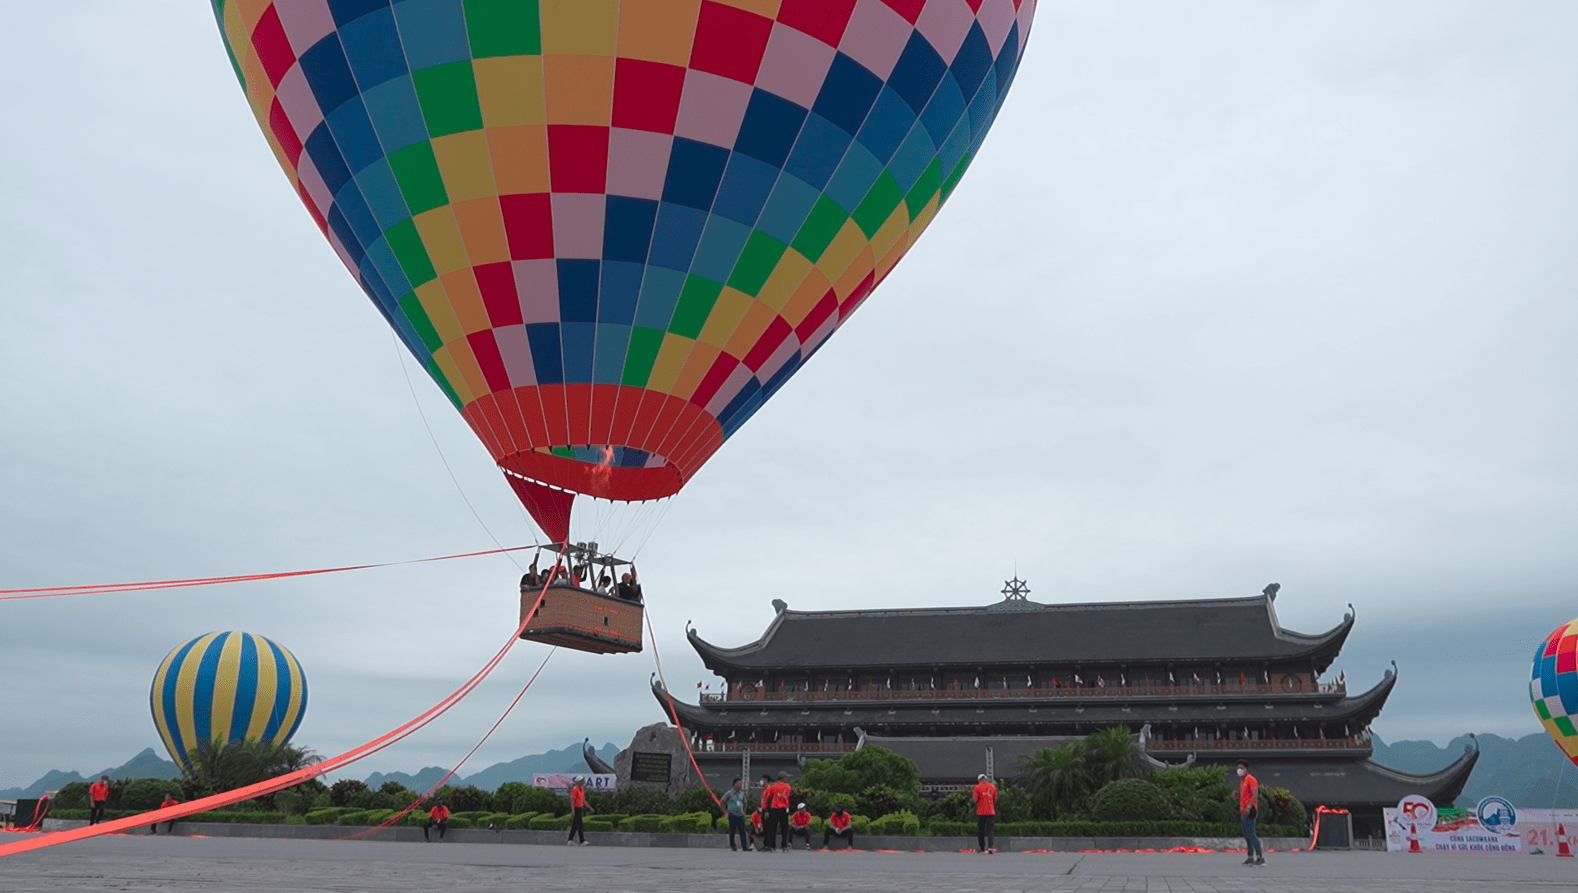 Du khách thích thú với loạt hoạt động tại Tam Chúc: Từ bay khinh khí cầu, thưởng thức trà đạo đến giải chạy ‘hóa trang’ độc nhất vô nhị - Ảnh 5.